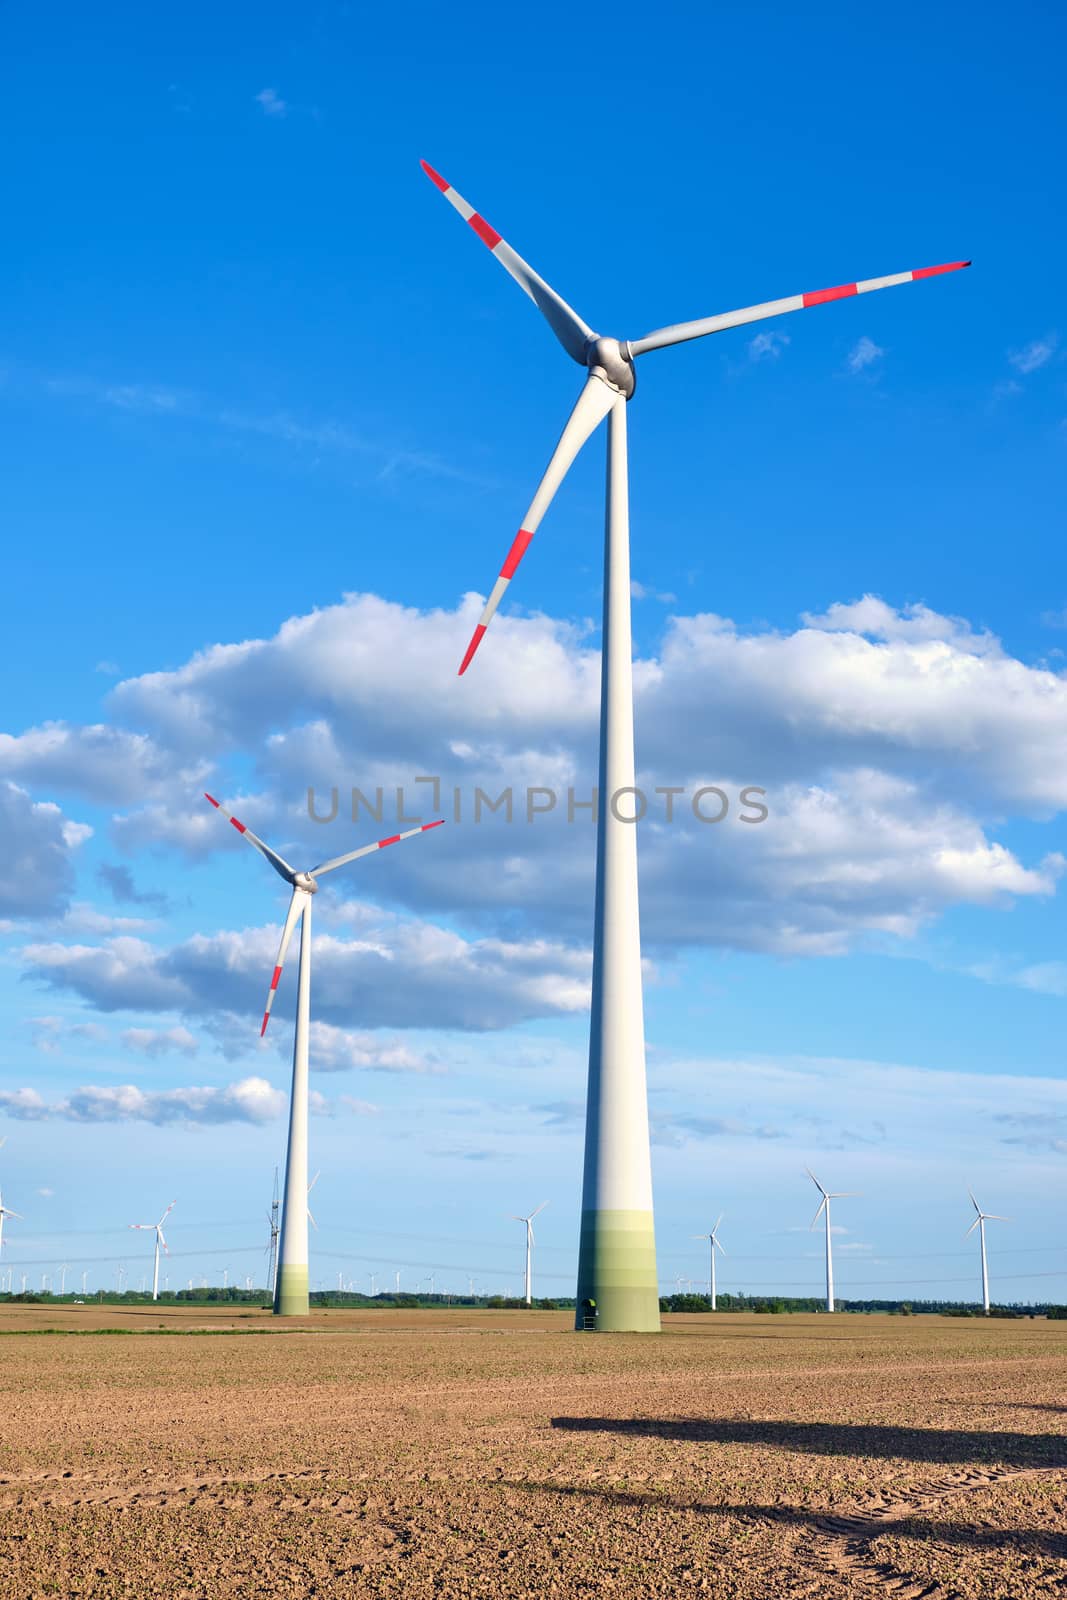 Wind wheels in a barren field seen in Germany